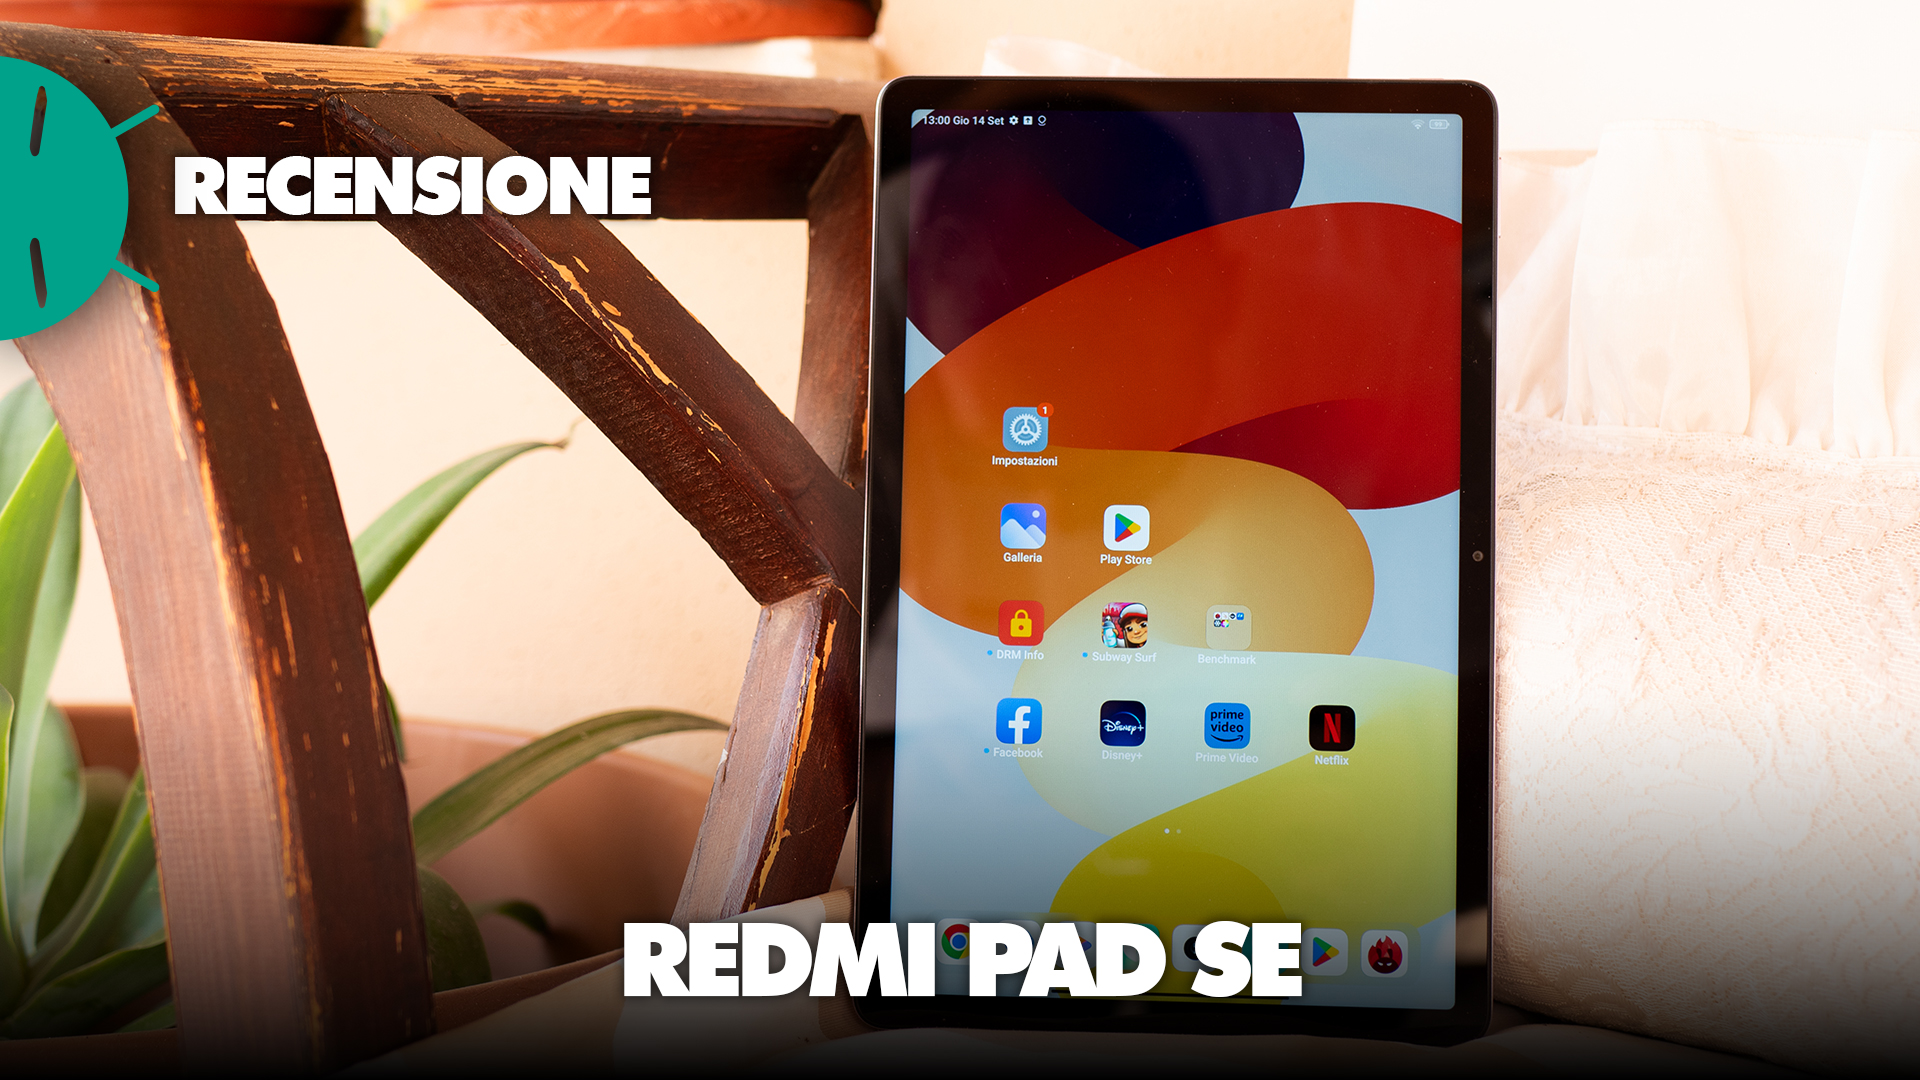 Redmi Pad SE - Xiaomi Italia